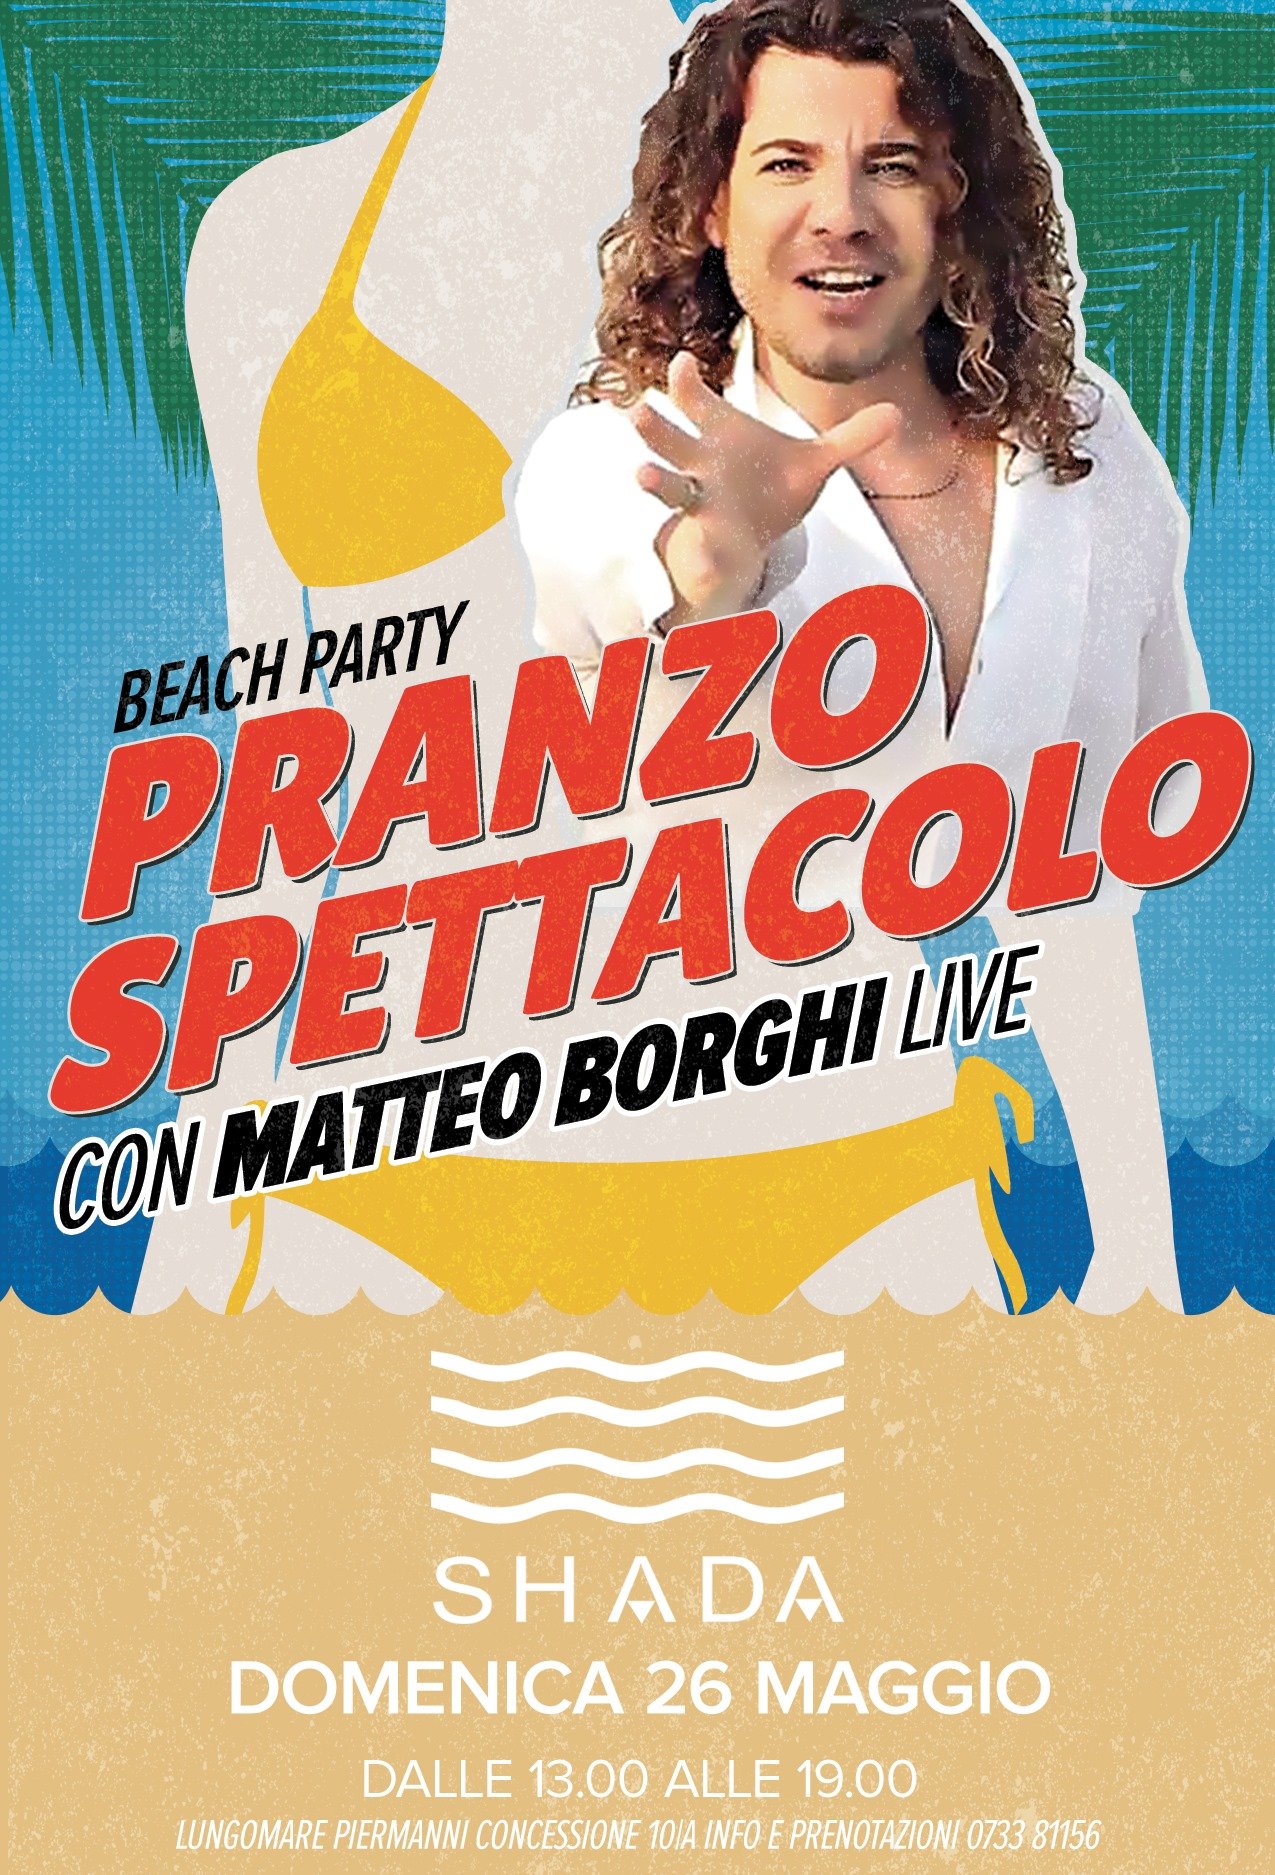 Pranzo spettacolo con Matteo Borghi live alla discoteca Shada